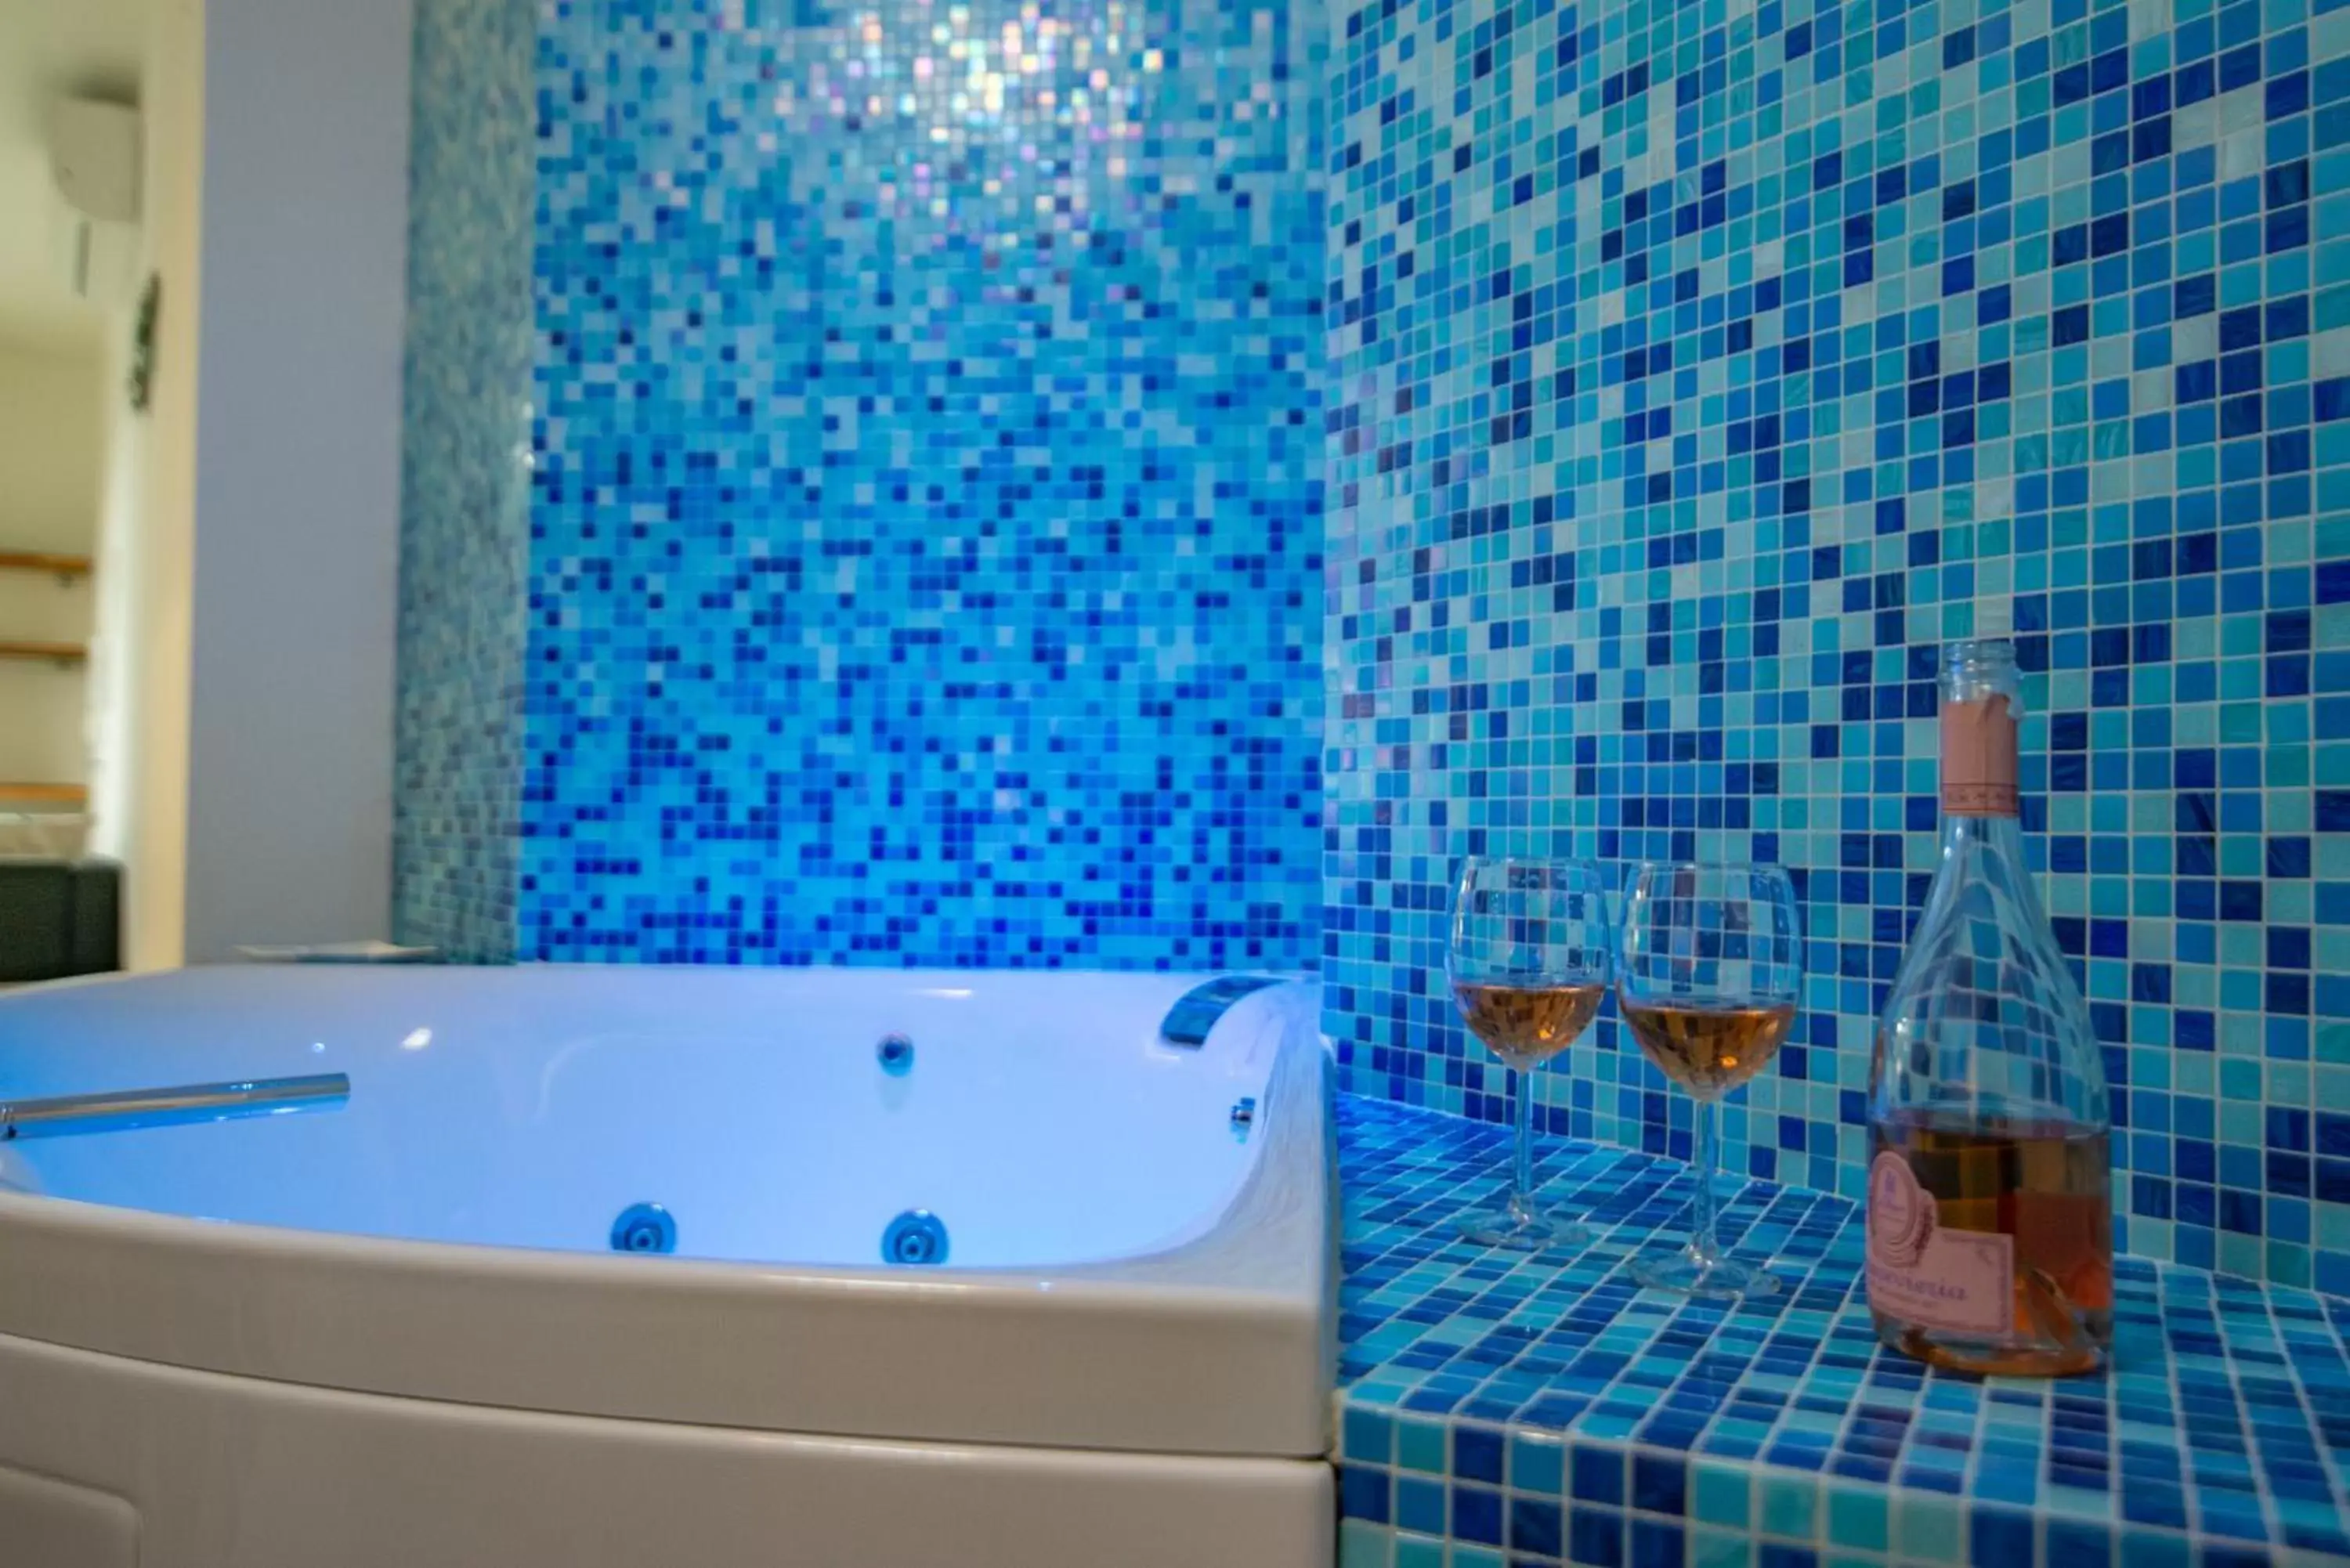 Hot Tub, Bathroom in Blue Dream